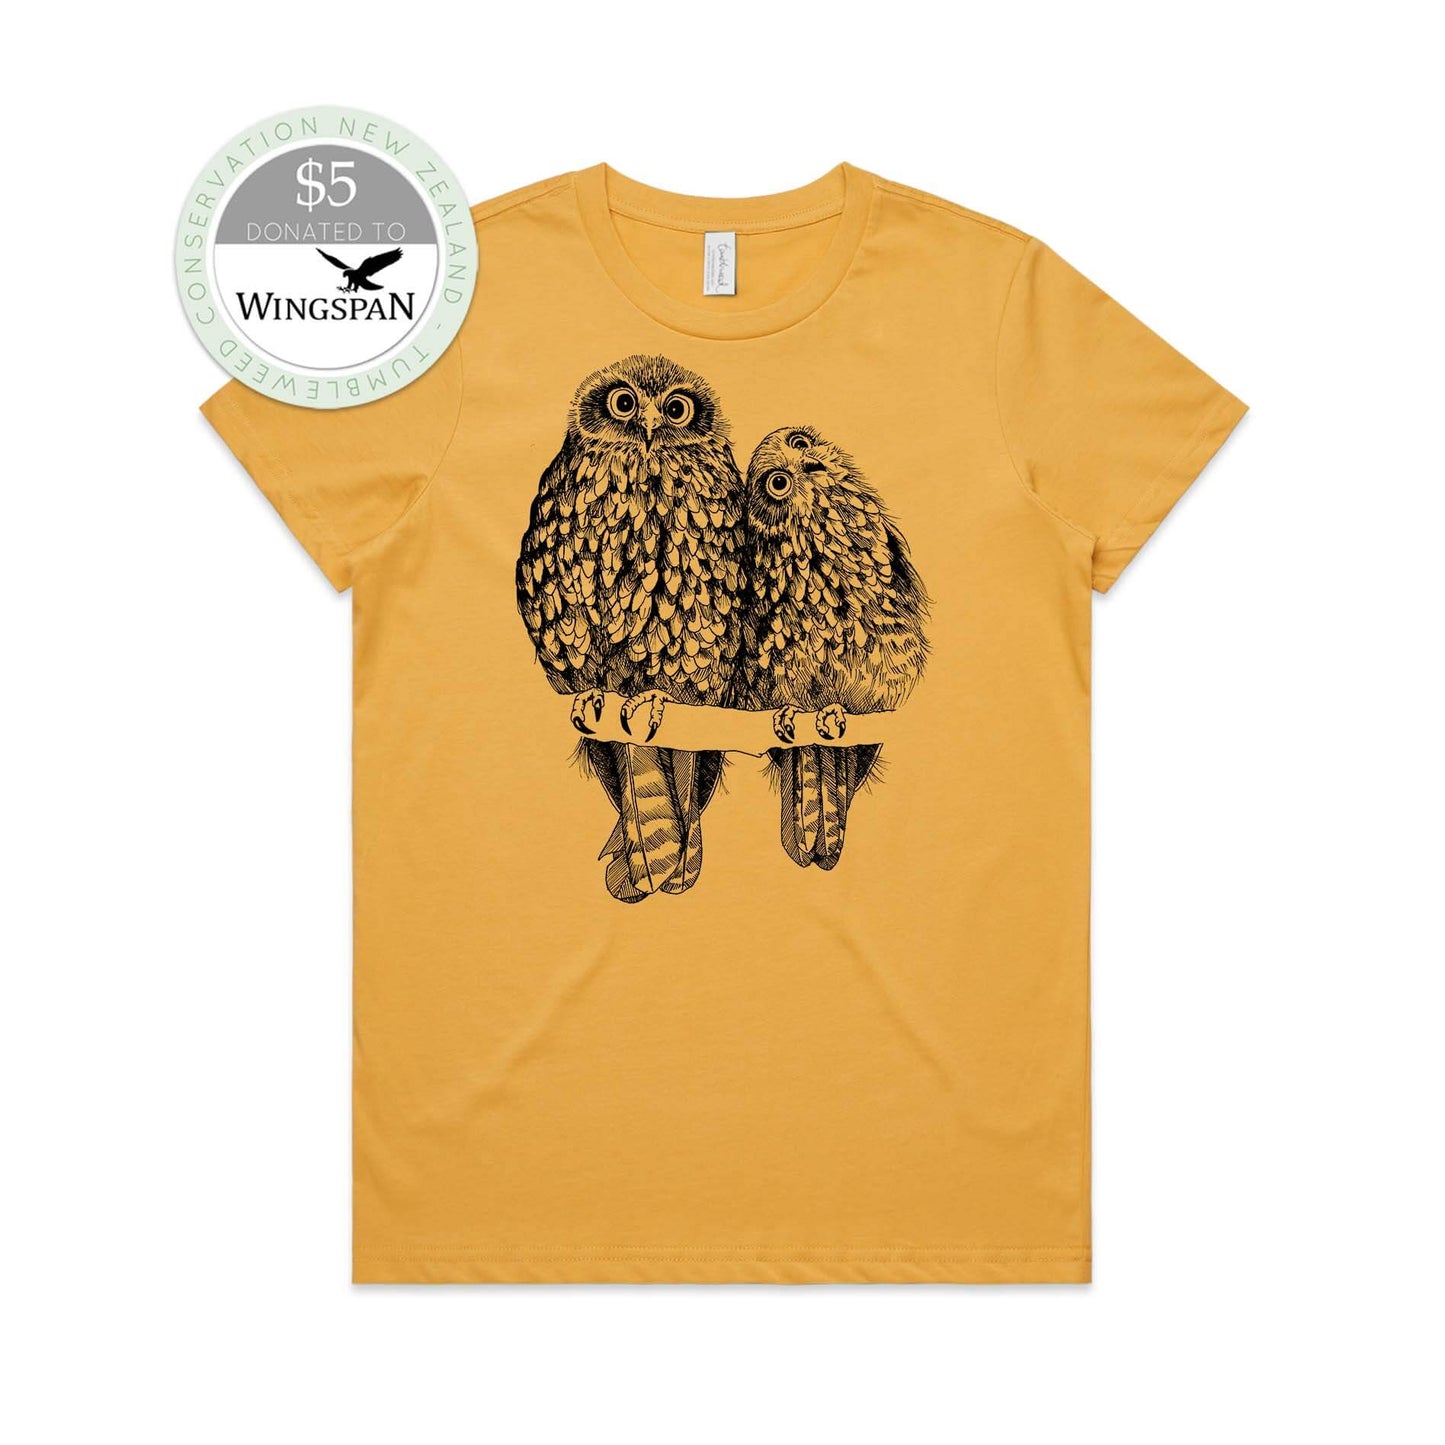 Mustard, female t-shirt featuring a screen printed Morepork/Ruru design.